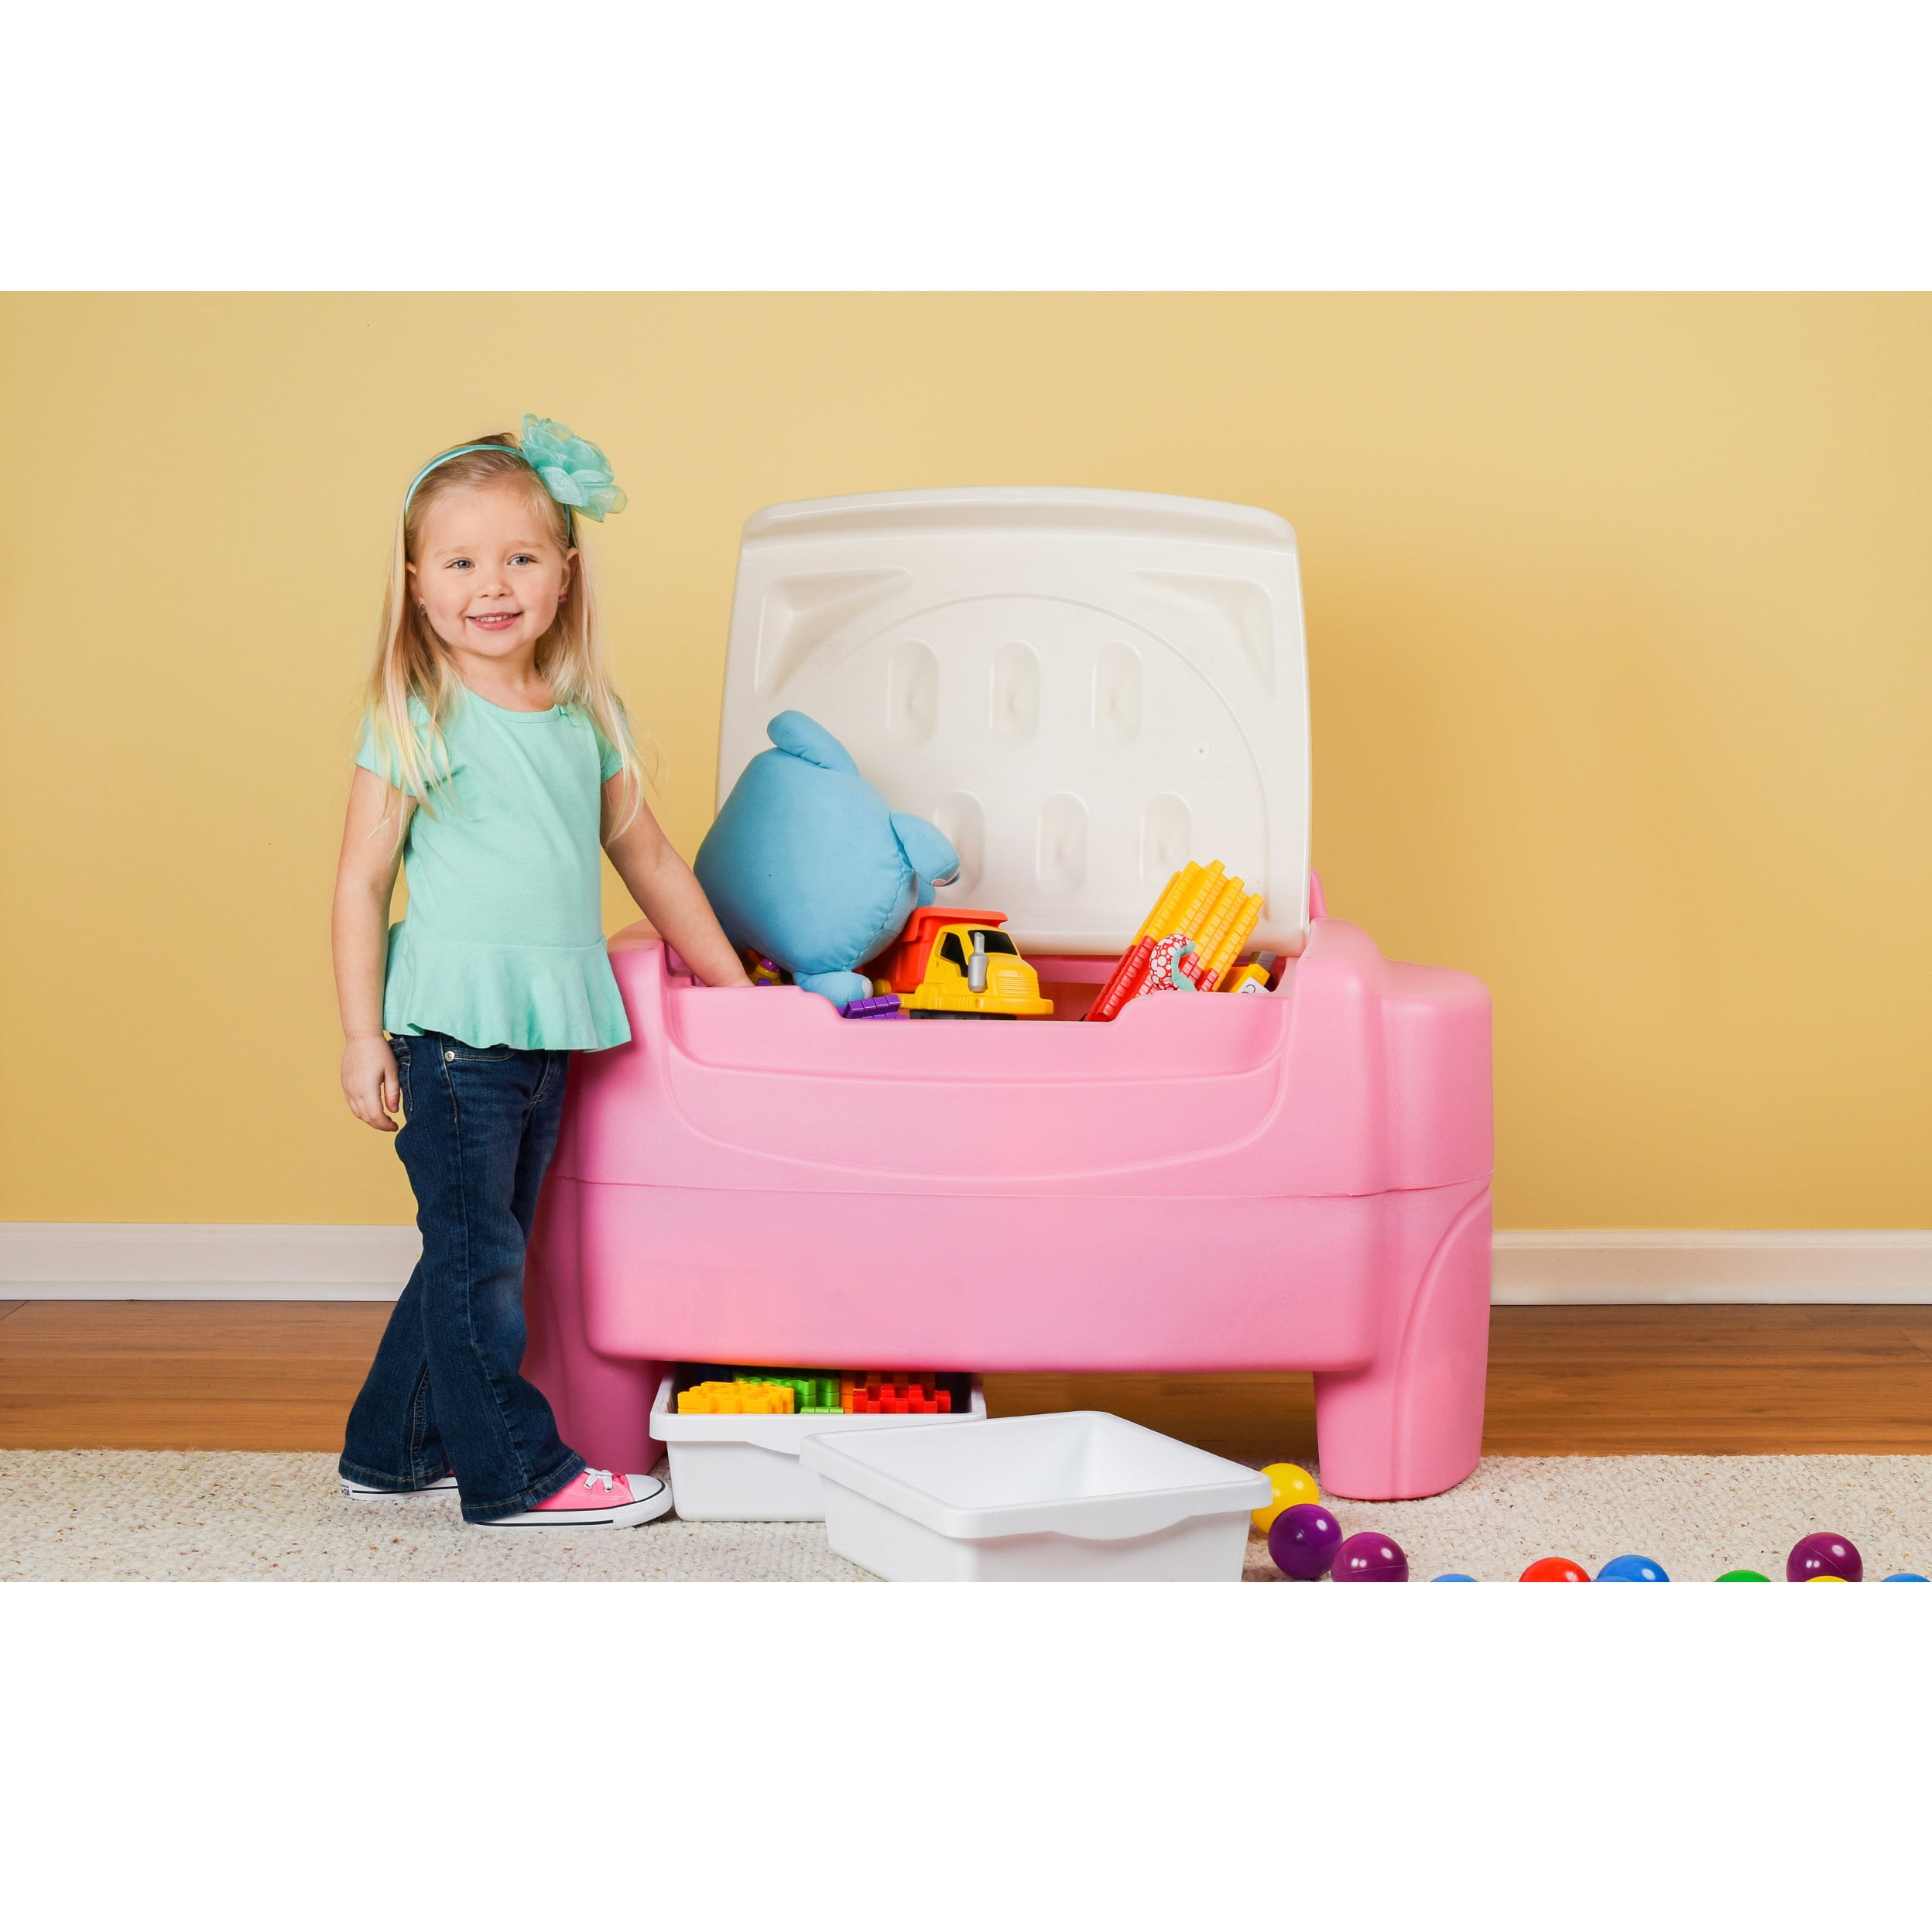 little girls toy chest